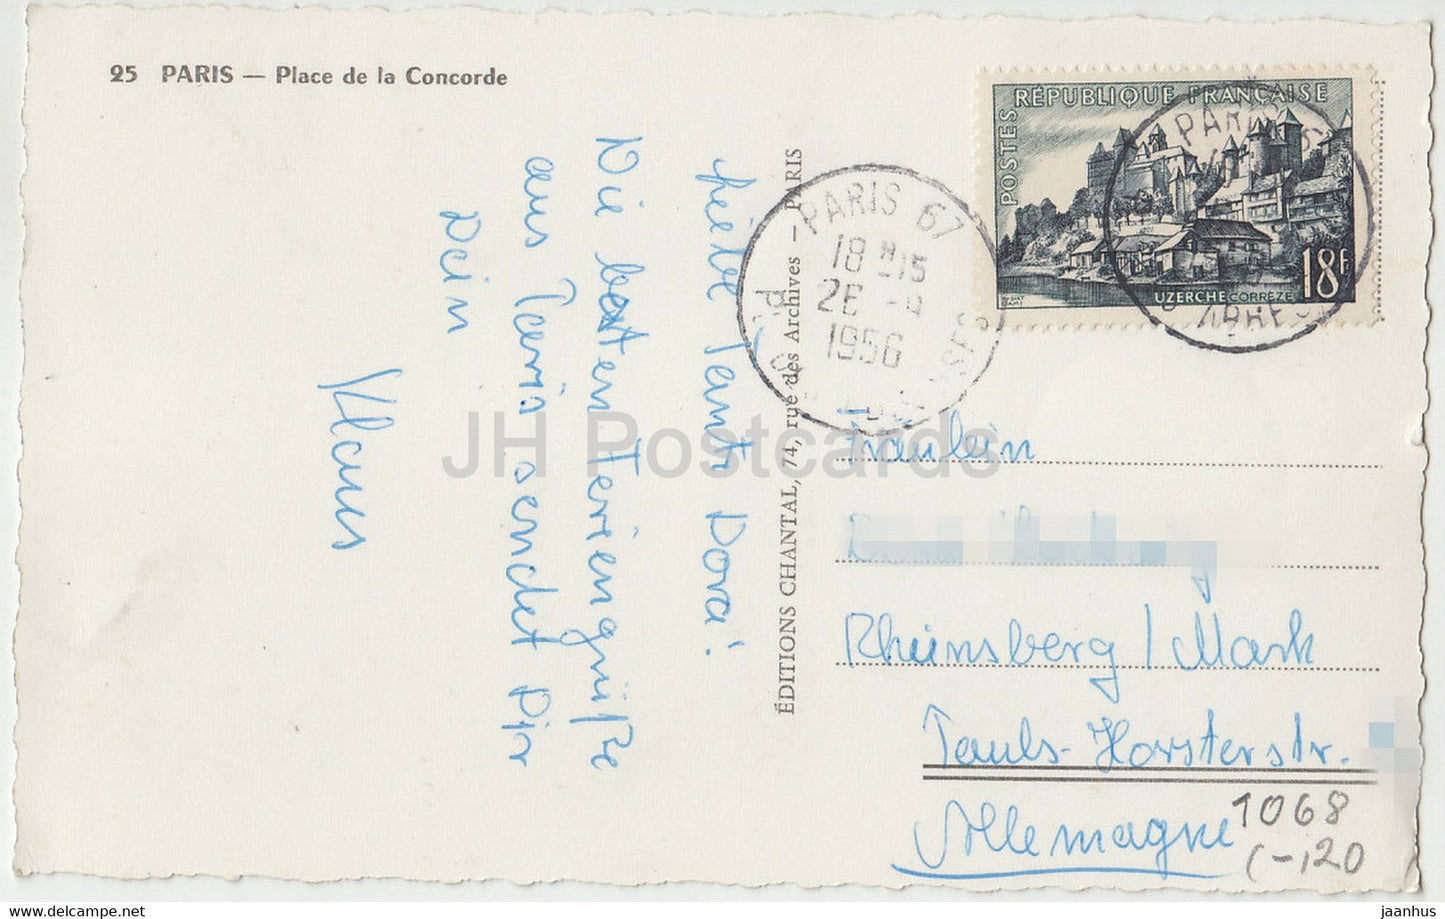 Paris - Place de la Concorde - car - bus - 25 - old postcard - 1956 - France - used